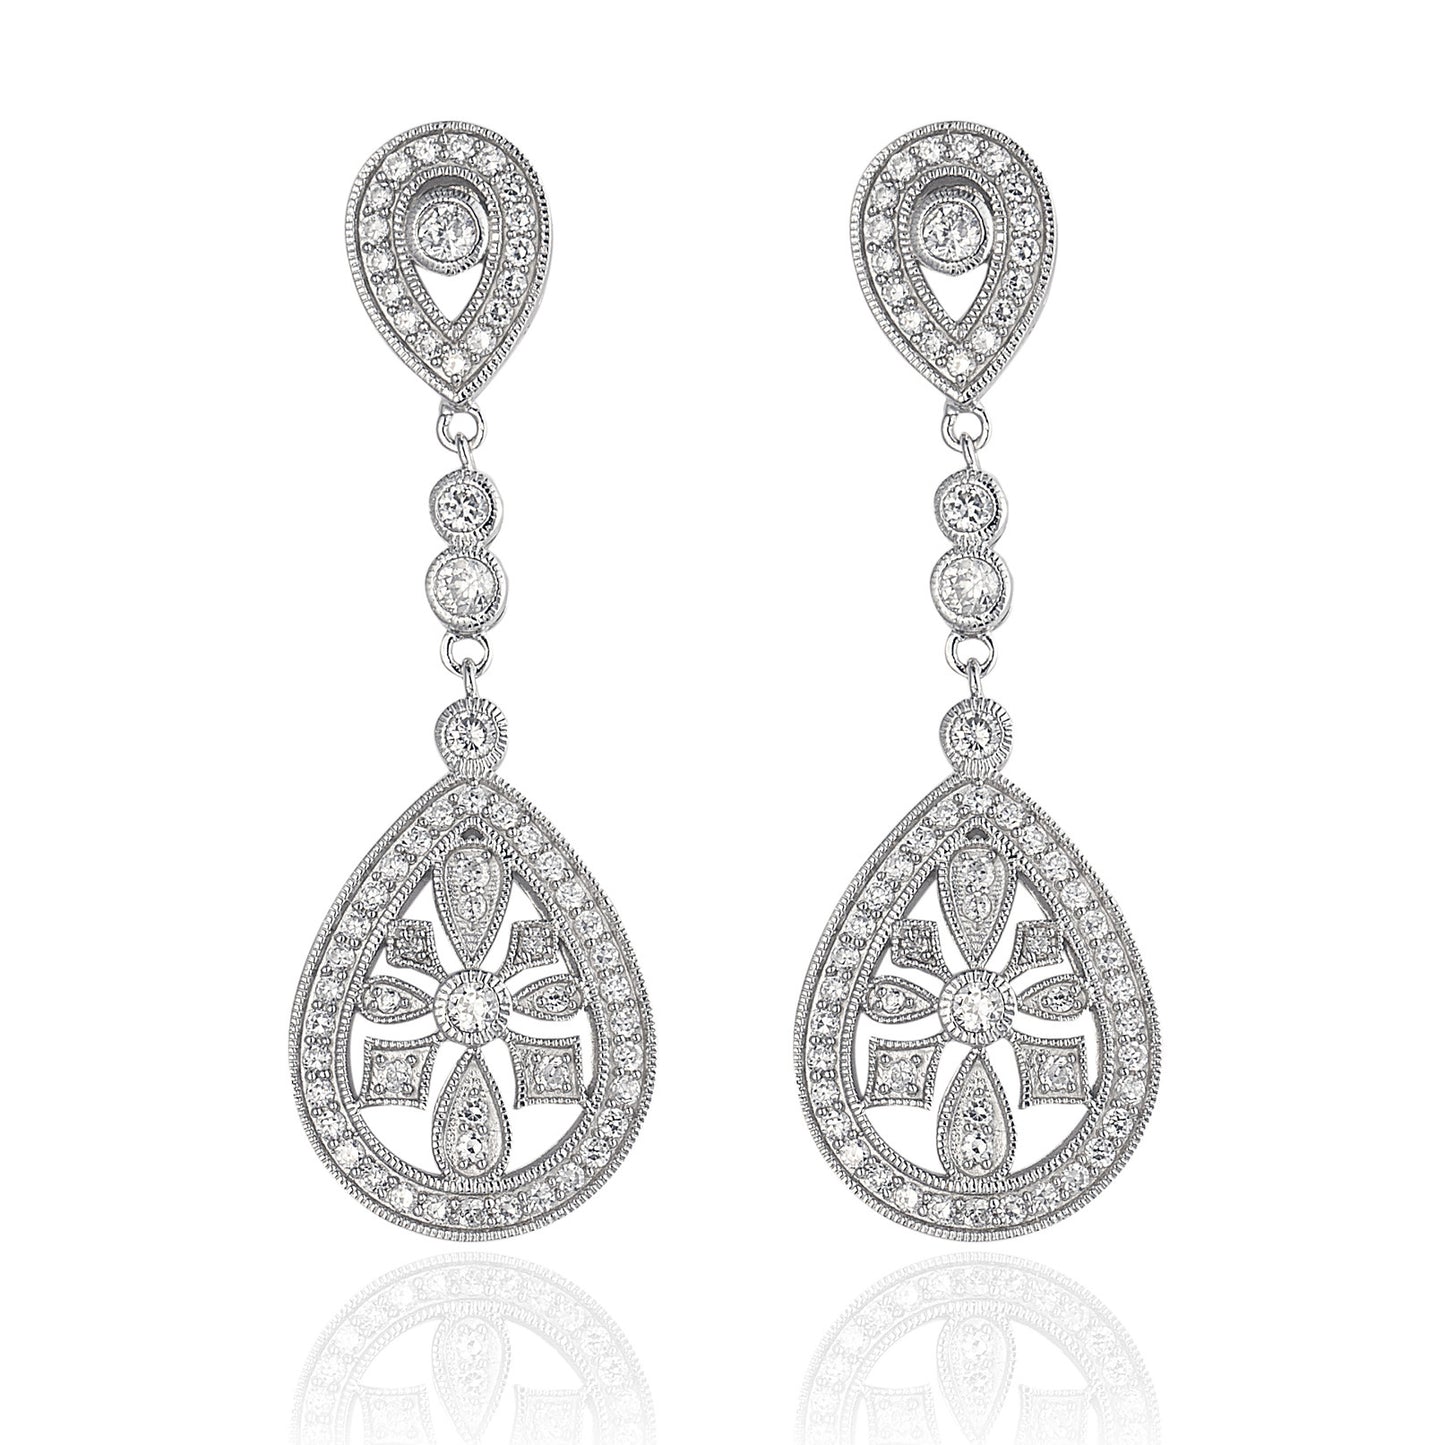 Chandelier Drop Earrings in 925 sterling silver, cubic zirconia stones in an elaborate chandelier design. Worldwide shipping from Australia.